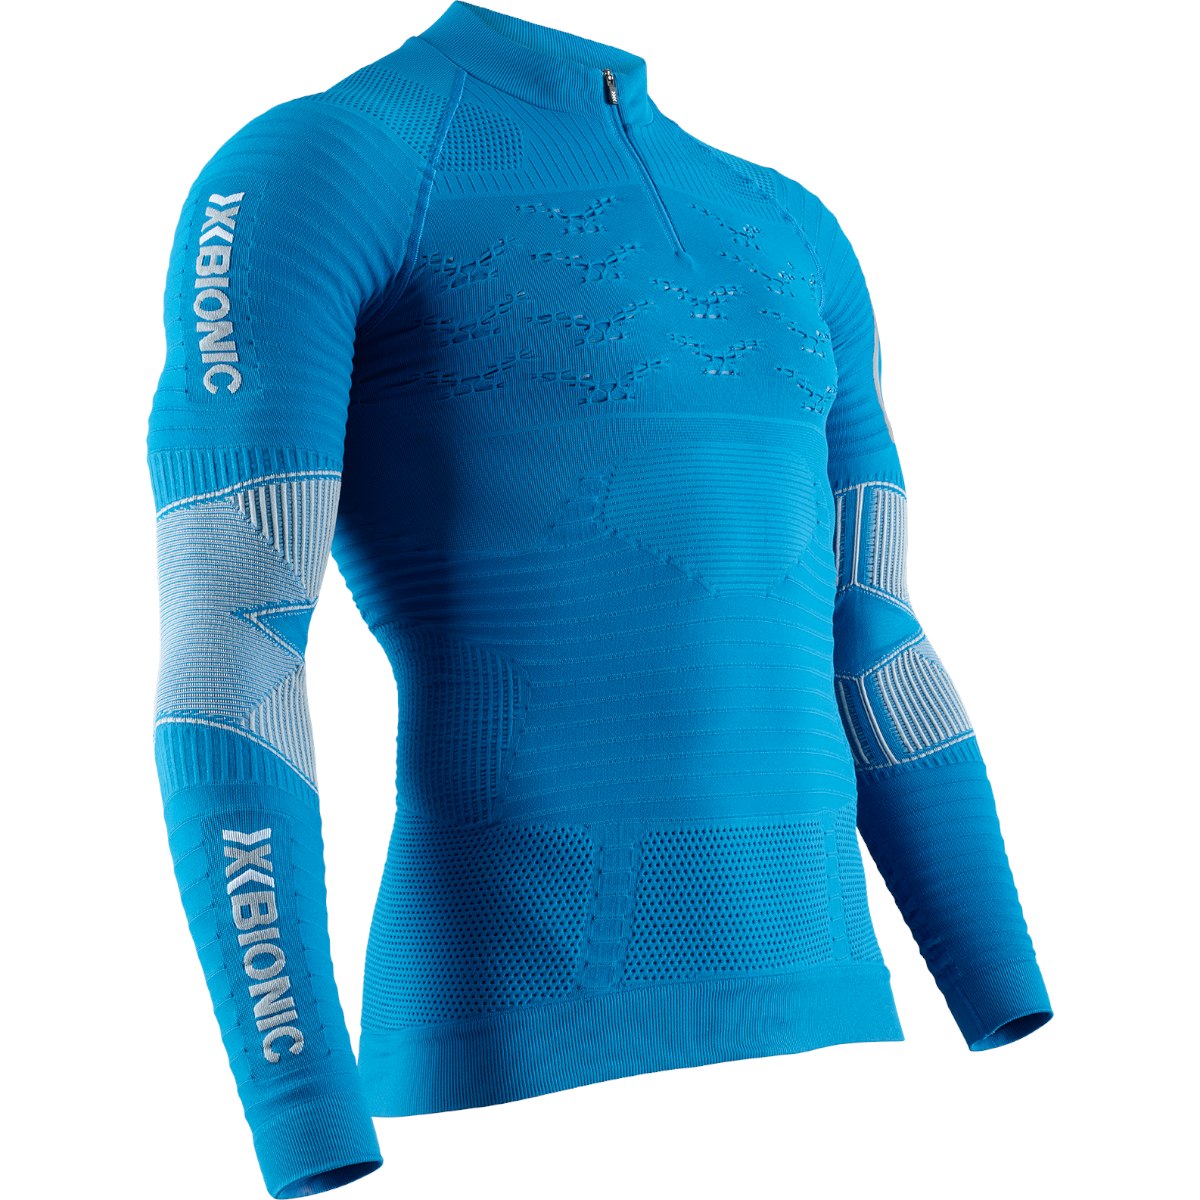 Produktbild von X-Bionic Effektor 4.0 Trail Run Powershirt 1/2 Zip Langarmshirt für Herren - teal blue/dolomite grey